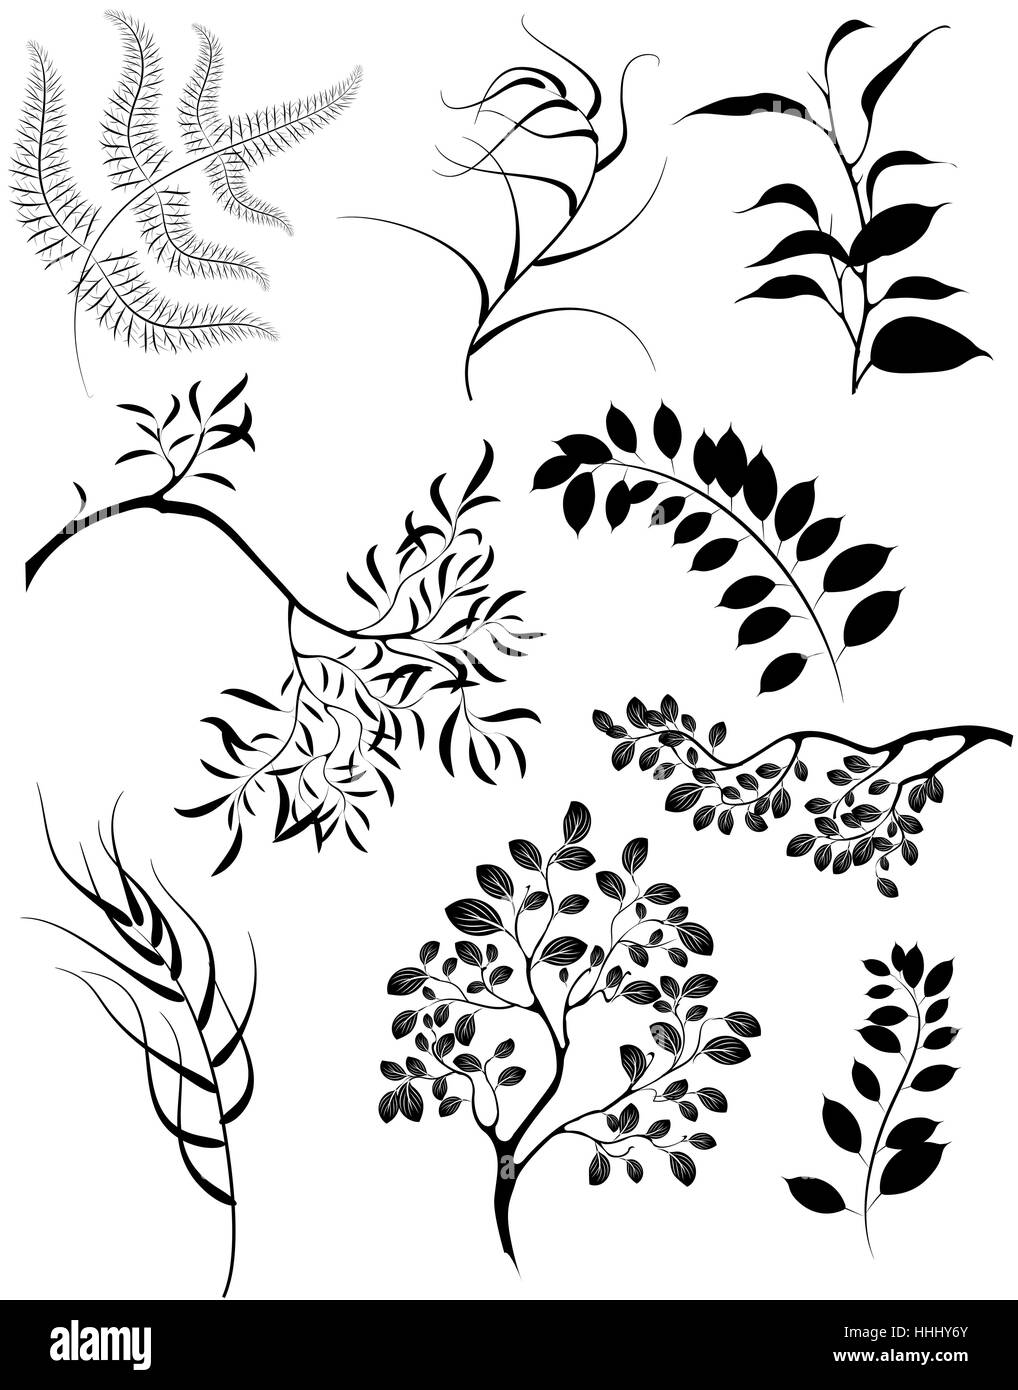 Silhouettes stylisées peint artistiquement de branches et de plantes décoratives. Illustration de Vecteur